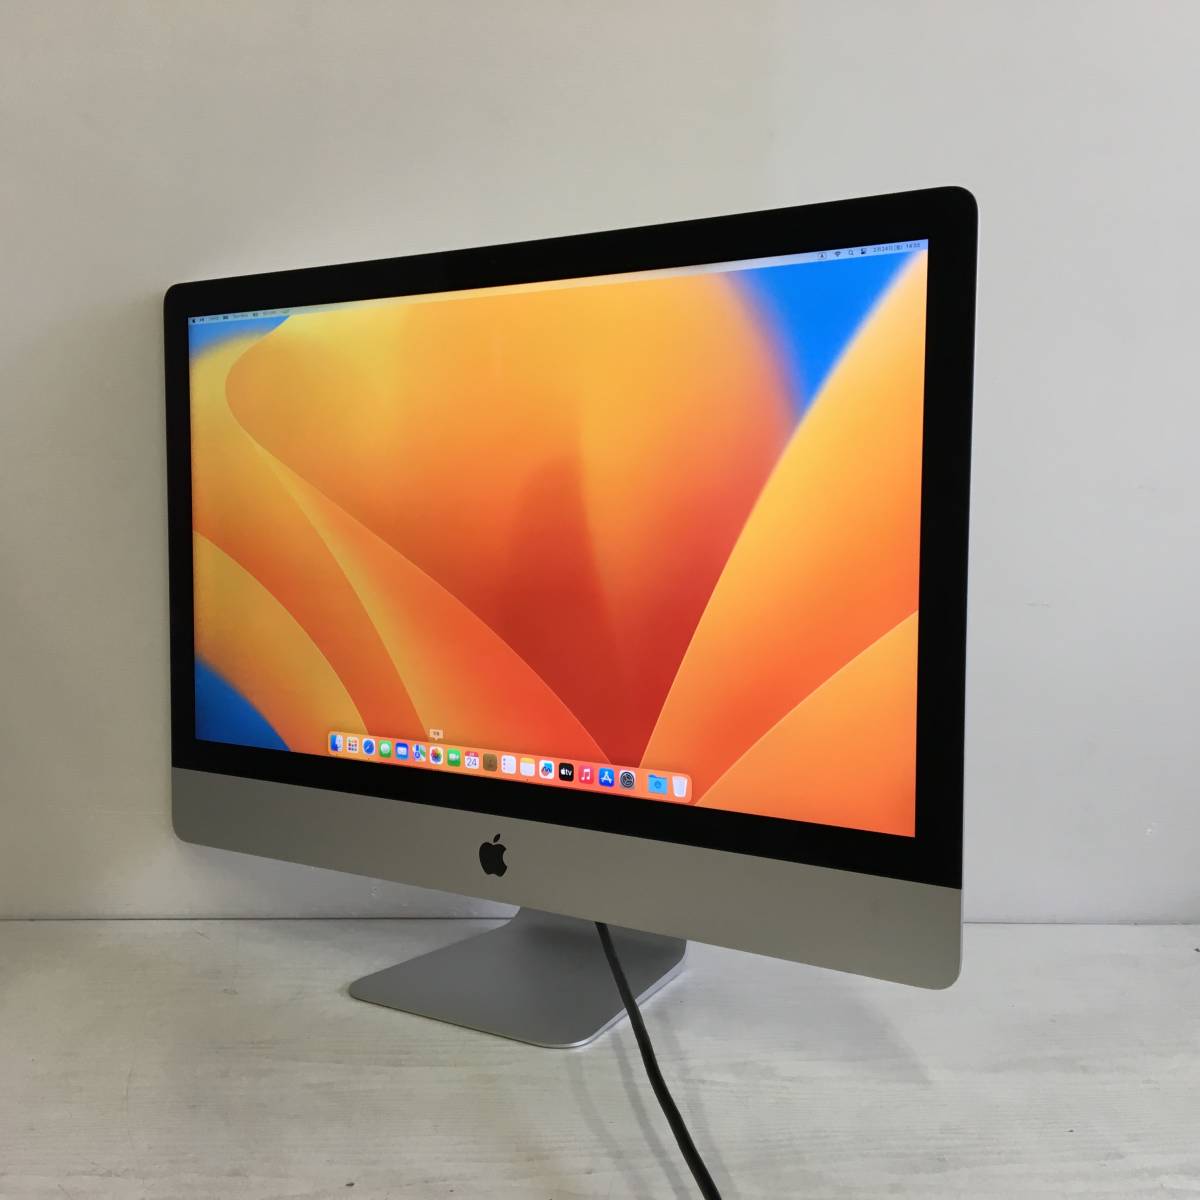 になる ☆【27インチ】Apple iMac (Retina 5K, 27-inch, 2017) A1419